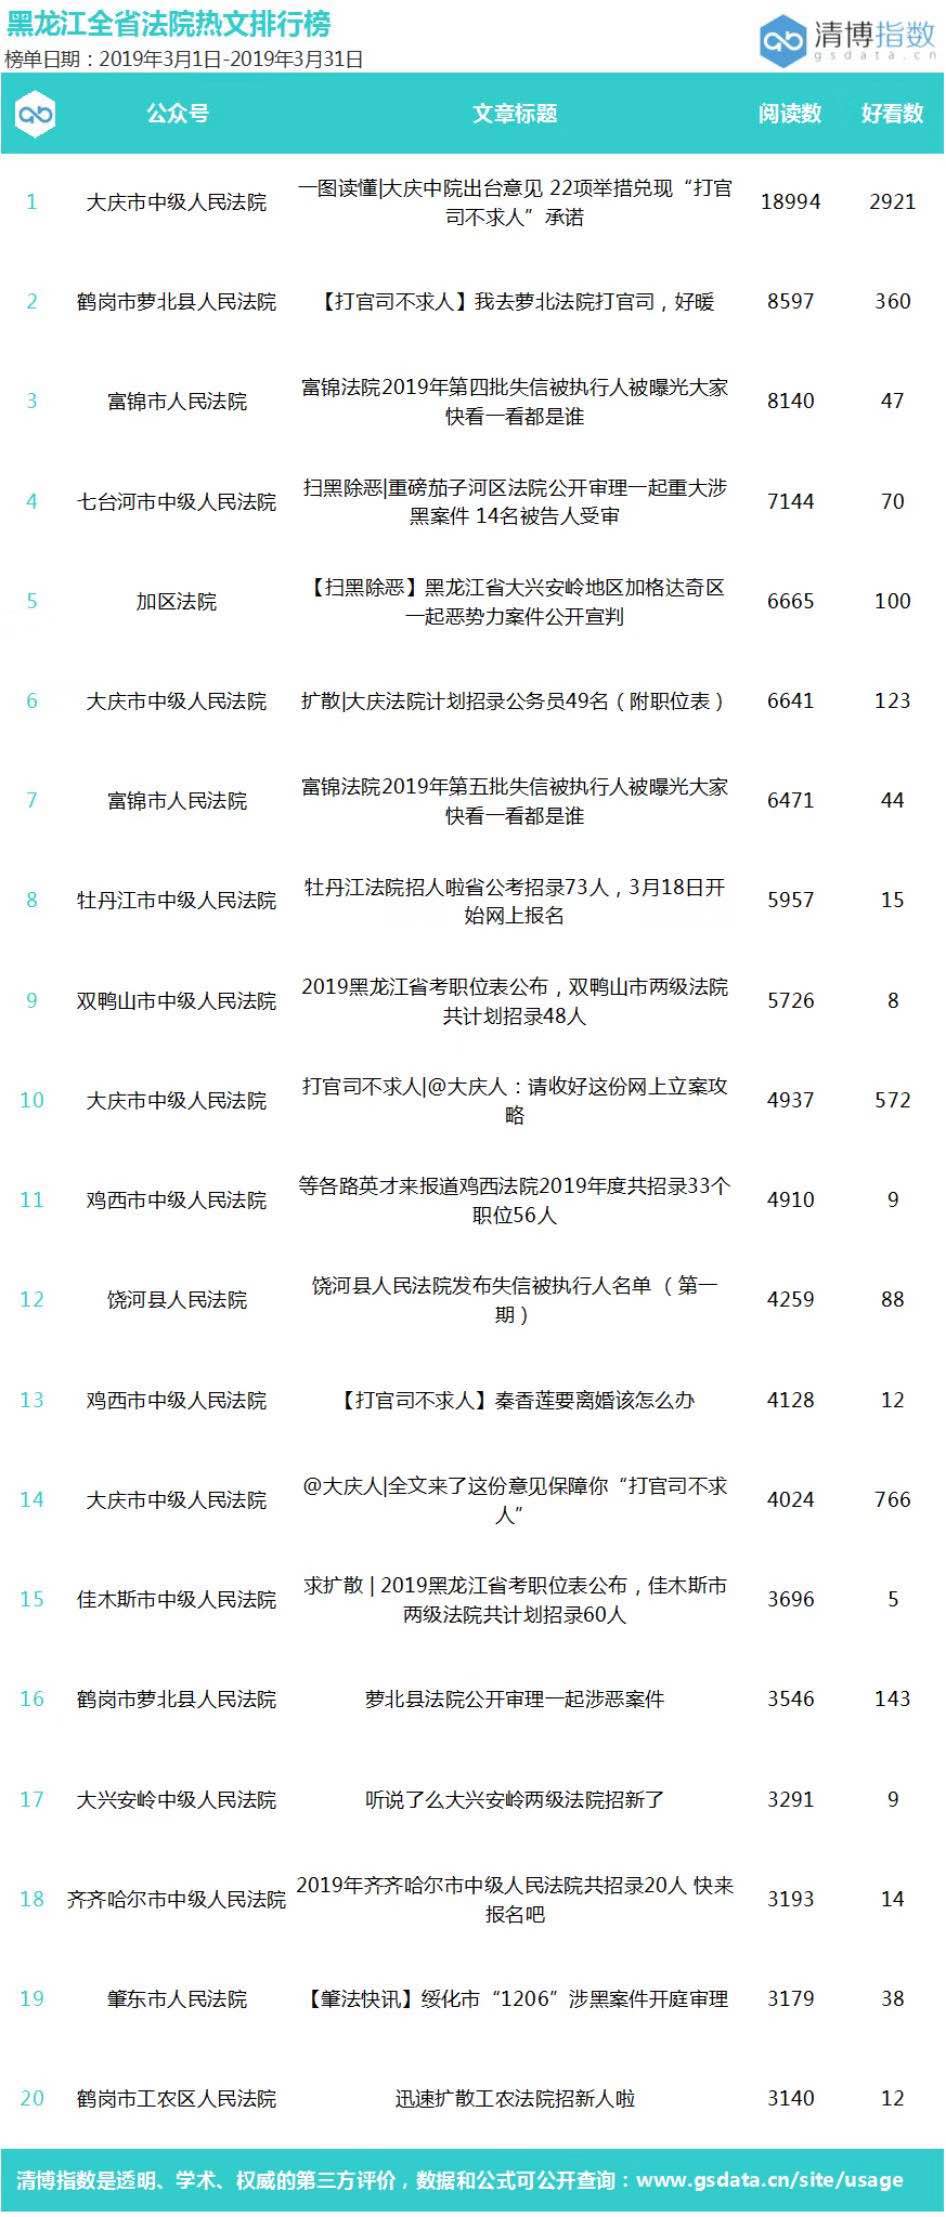 2019xp系统排行榜_榜单第3期|黑龙江法院系统官方微信2019年3月排行榜发布